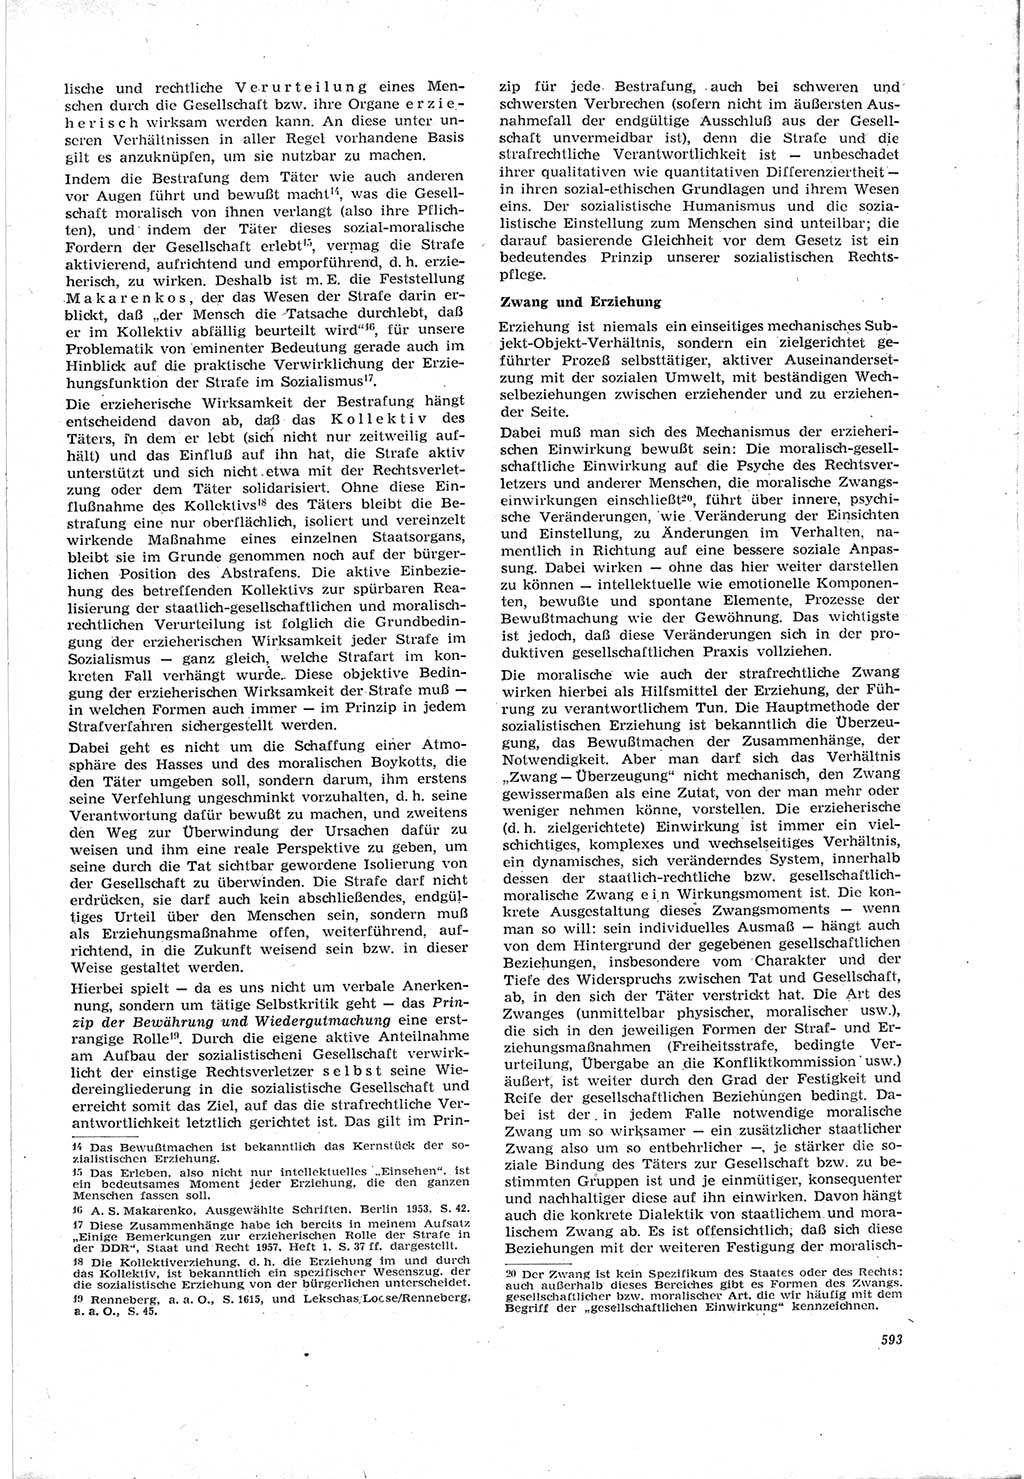 Neue Justiz (NJ), Zeitschrift für Recht und Rechtswissenschaft [Deutsche Demokratische Republik (DDR)], 18. Jahrgang 1964, Seite 593 (NJ DDR 1964, S. 593)